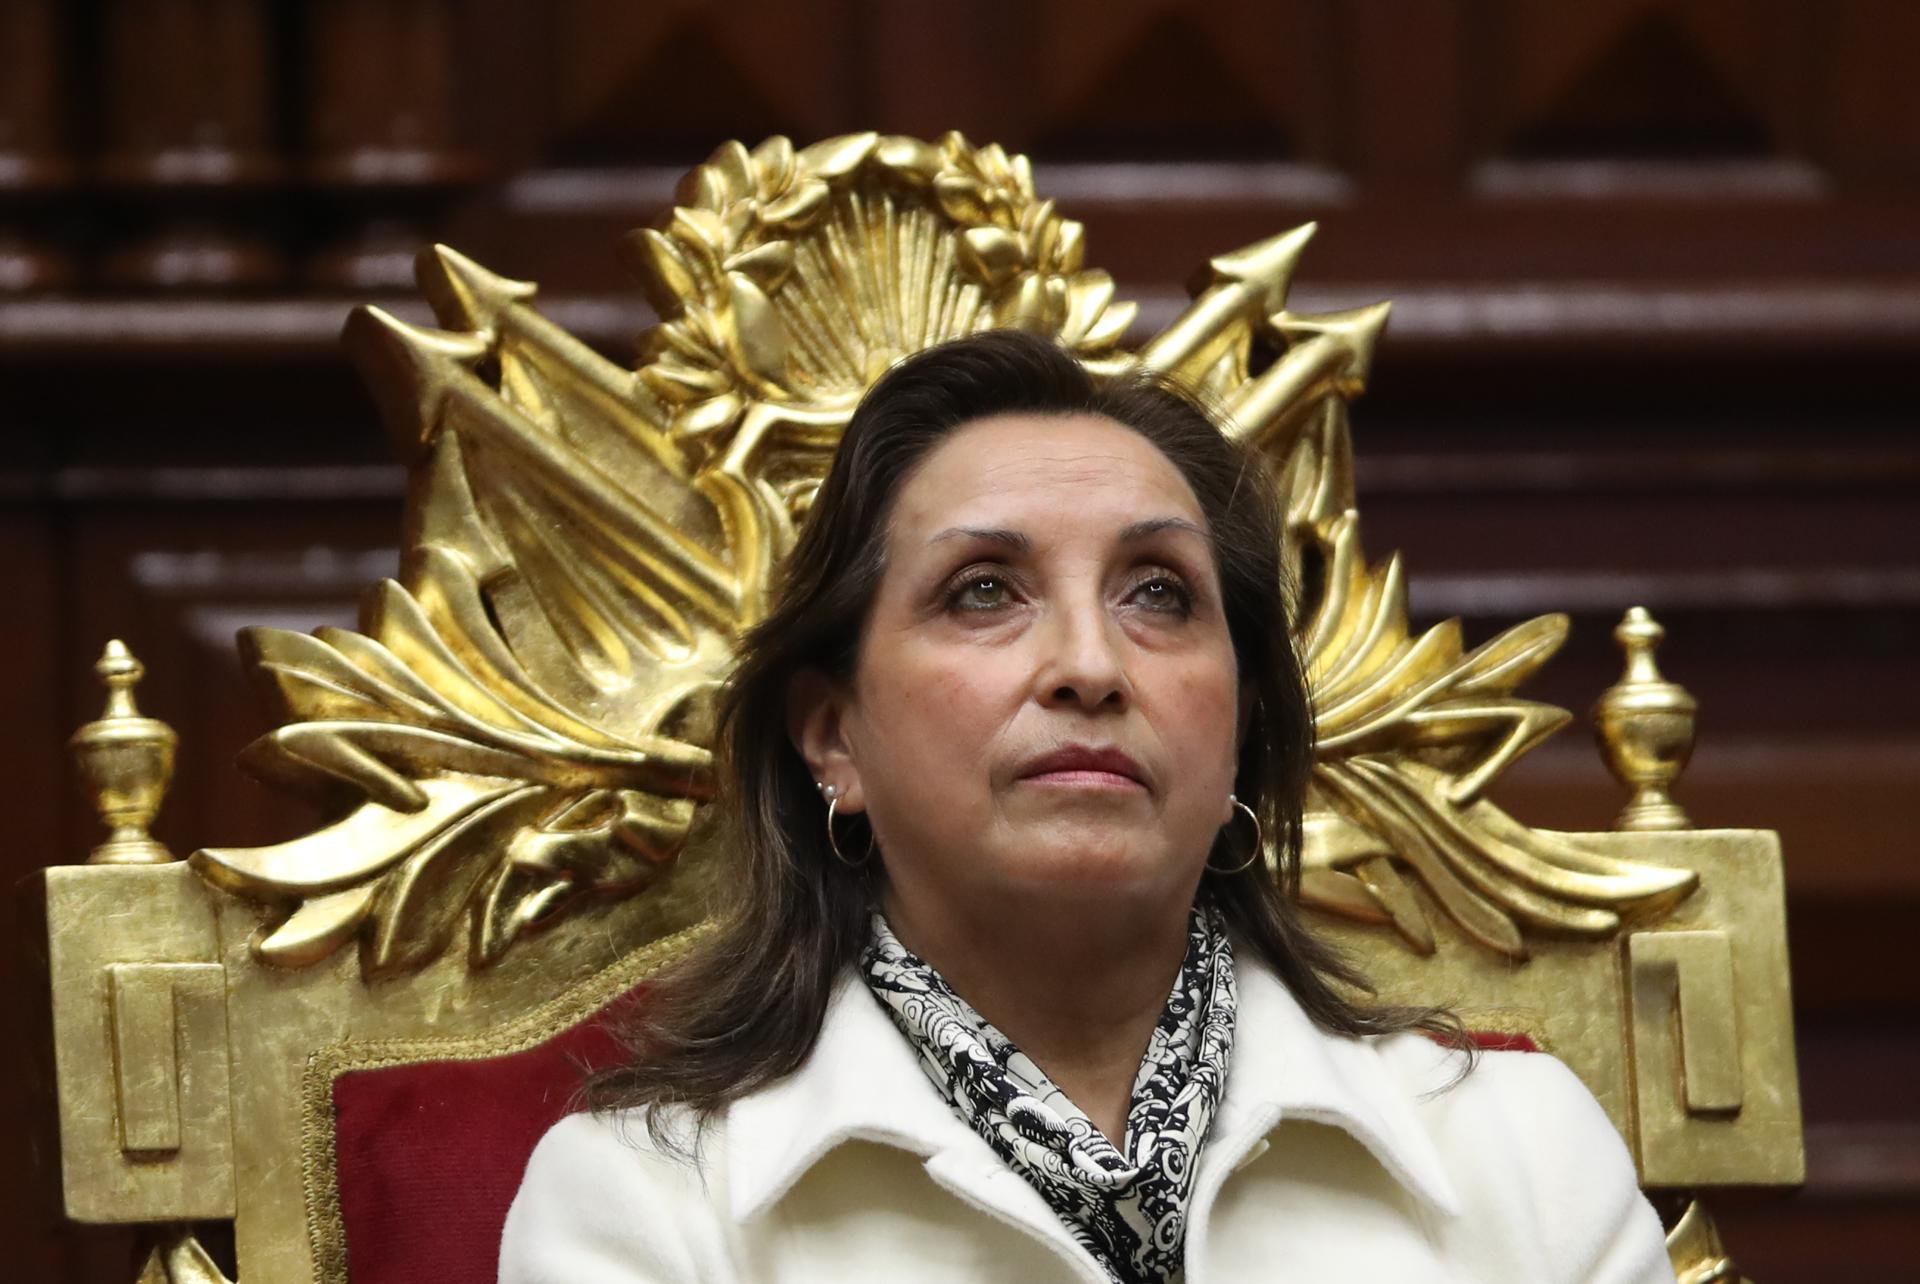 Subcomisión del Congreso archivó denuncias contra la vicepresidenta de Perú